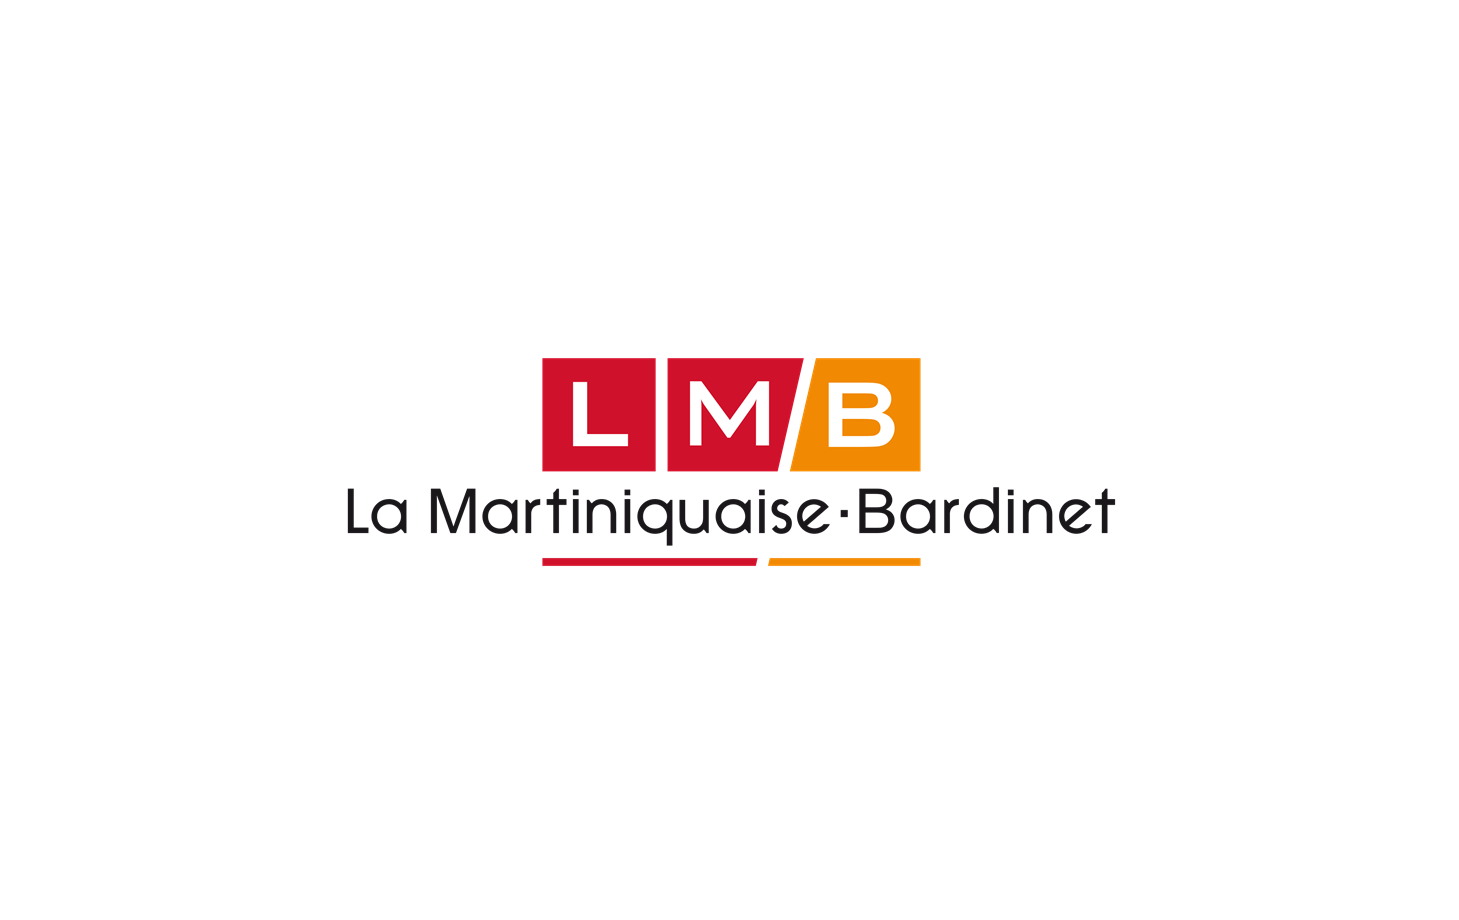  La  Martiniquaise  reports 1MM  turnover in 2022 La  